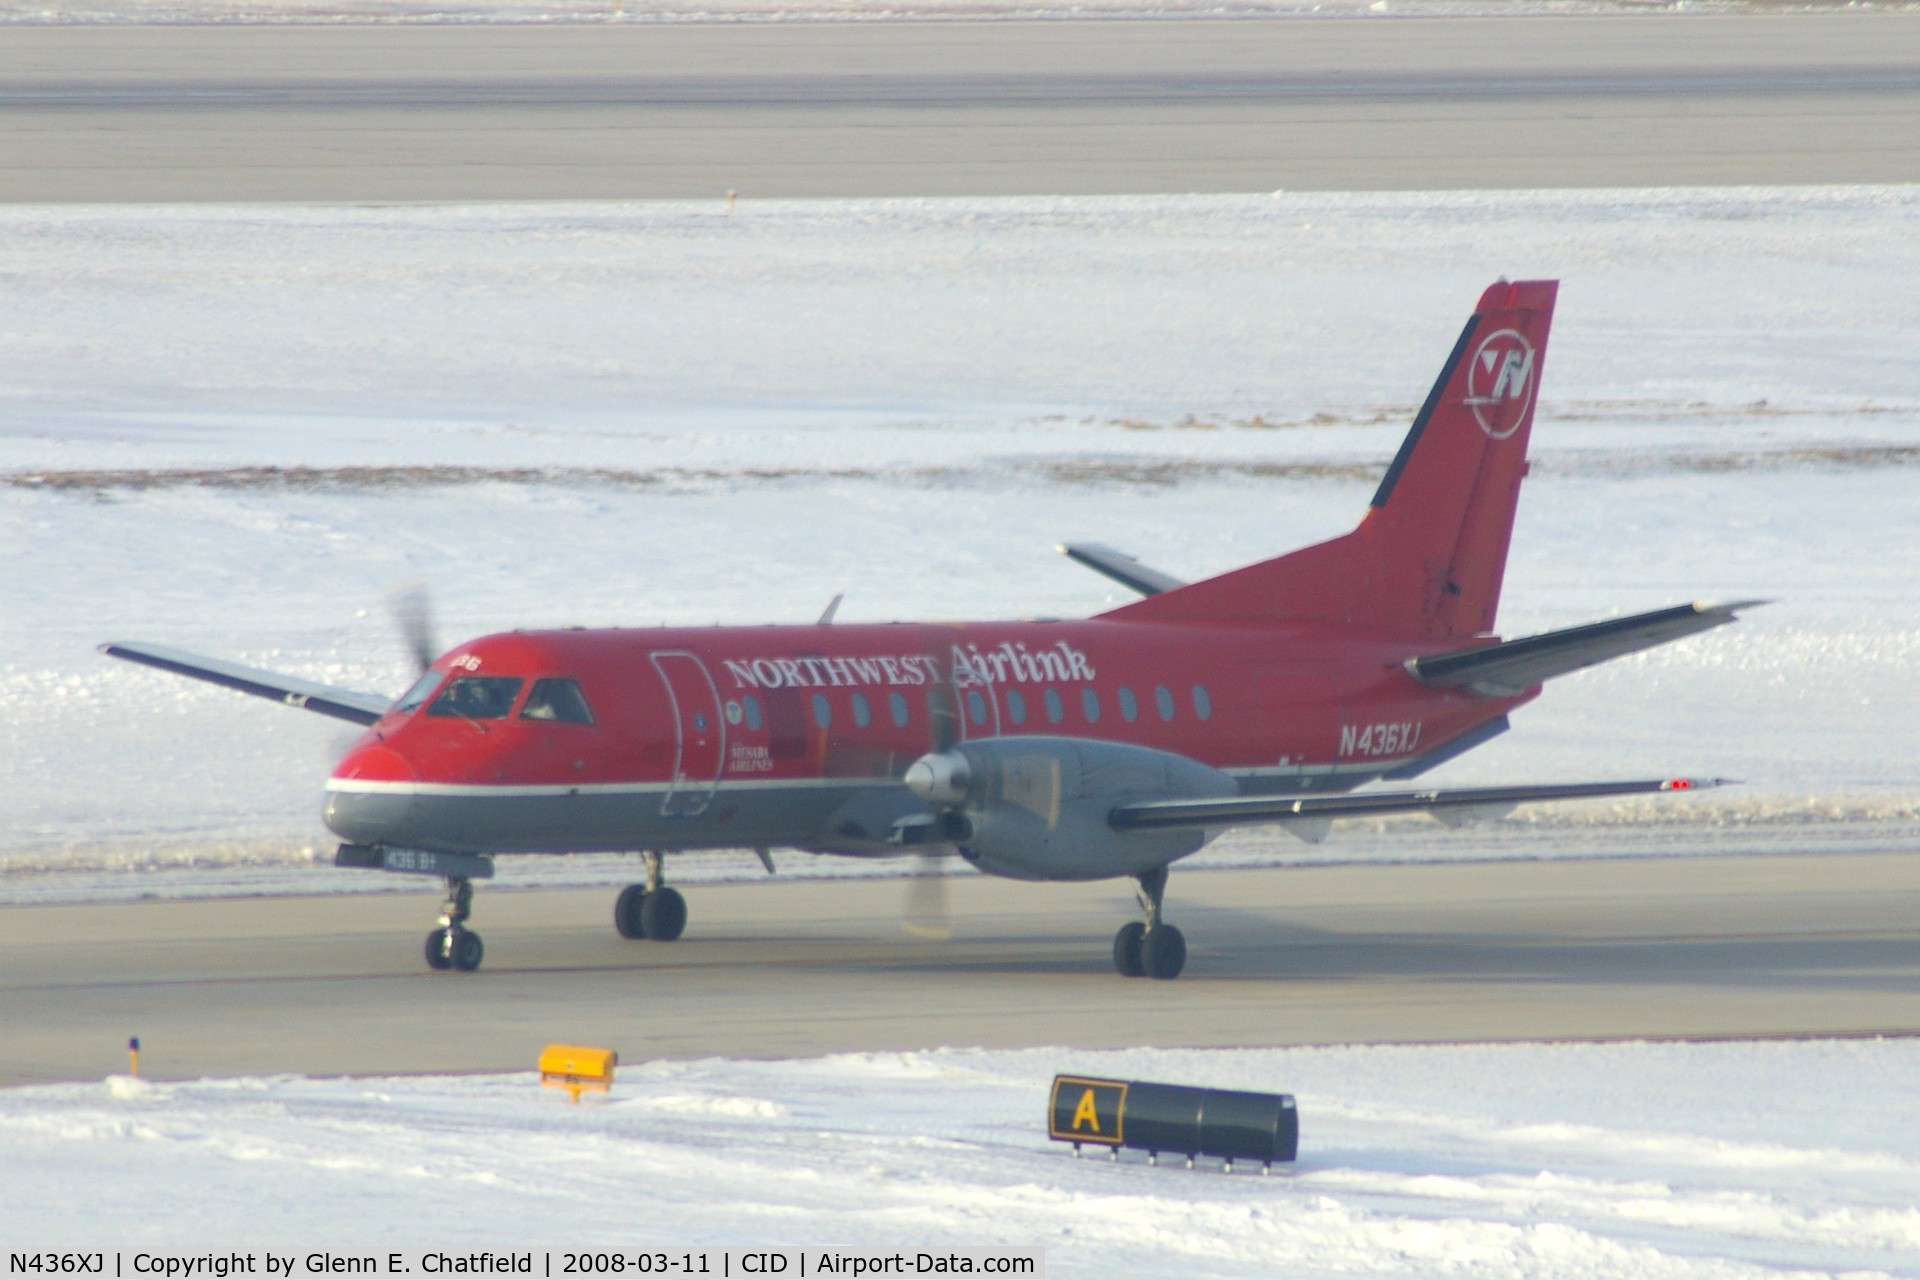 N436XJ, 1998 Saab 340B+ C/N 340B-436, Taxiing inbound on Alpha from Runway 27